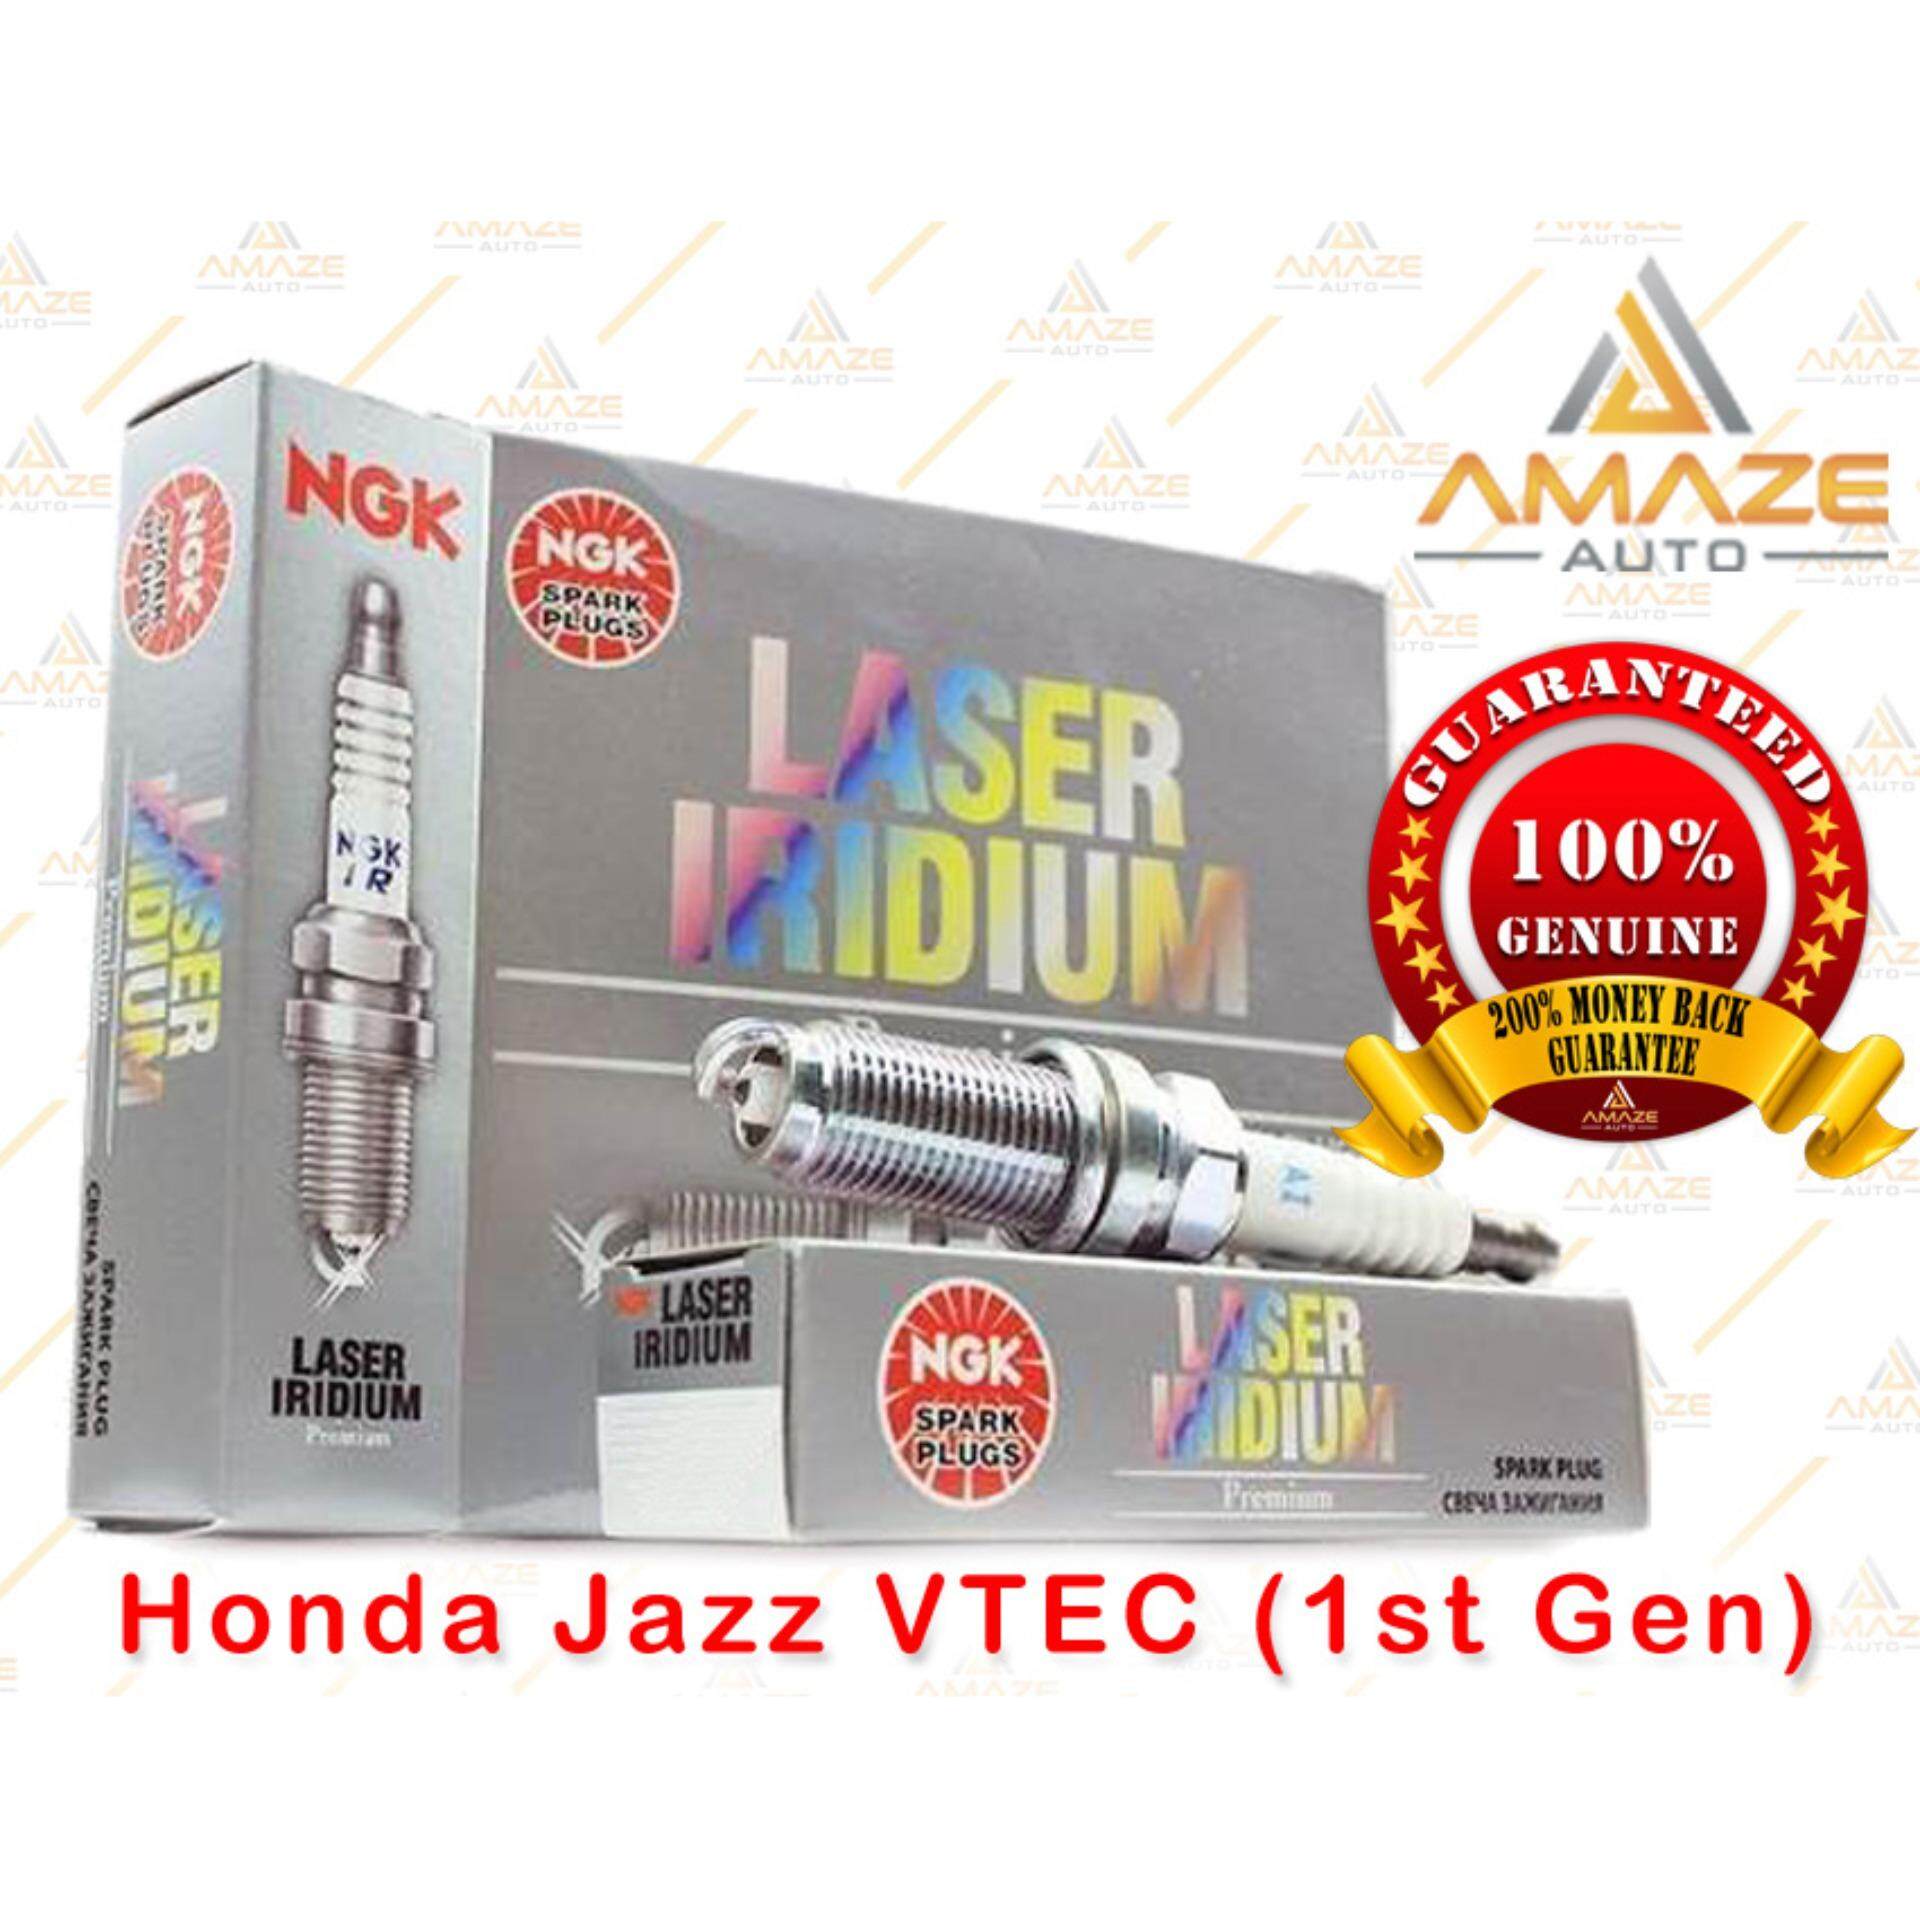 NGK Laser Iridium Spark Plug for Honda Jazz VTEC (1st Gen)